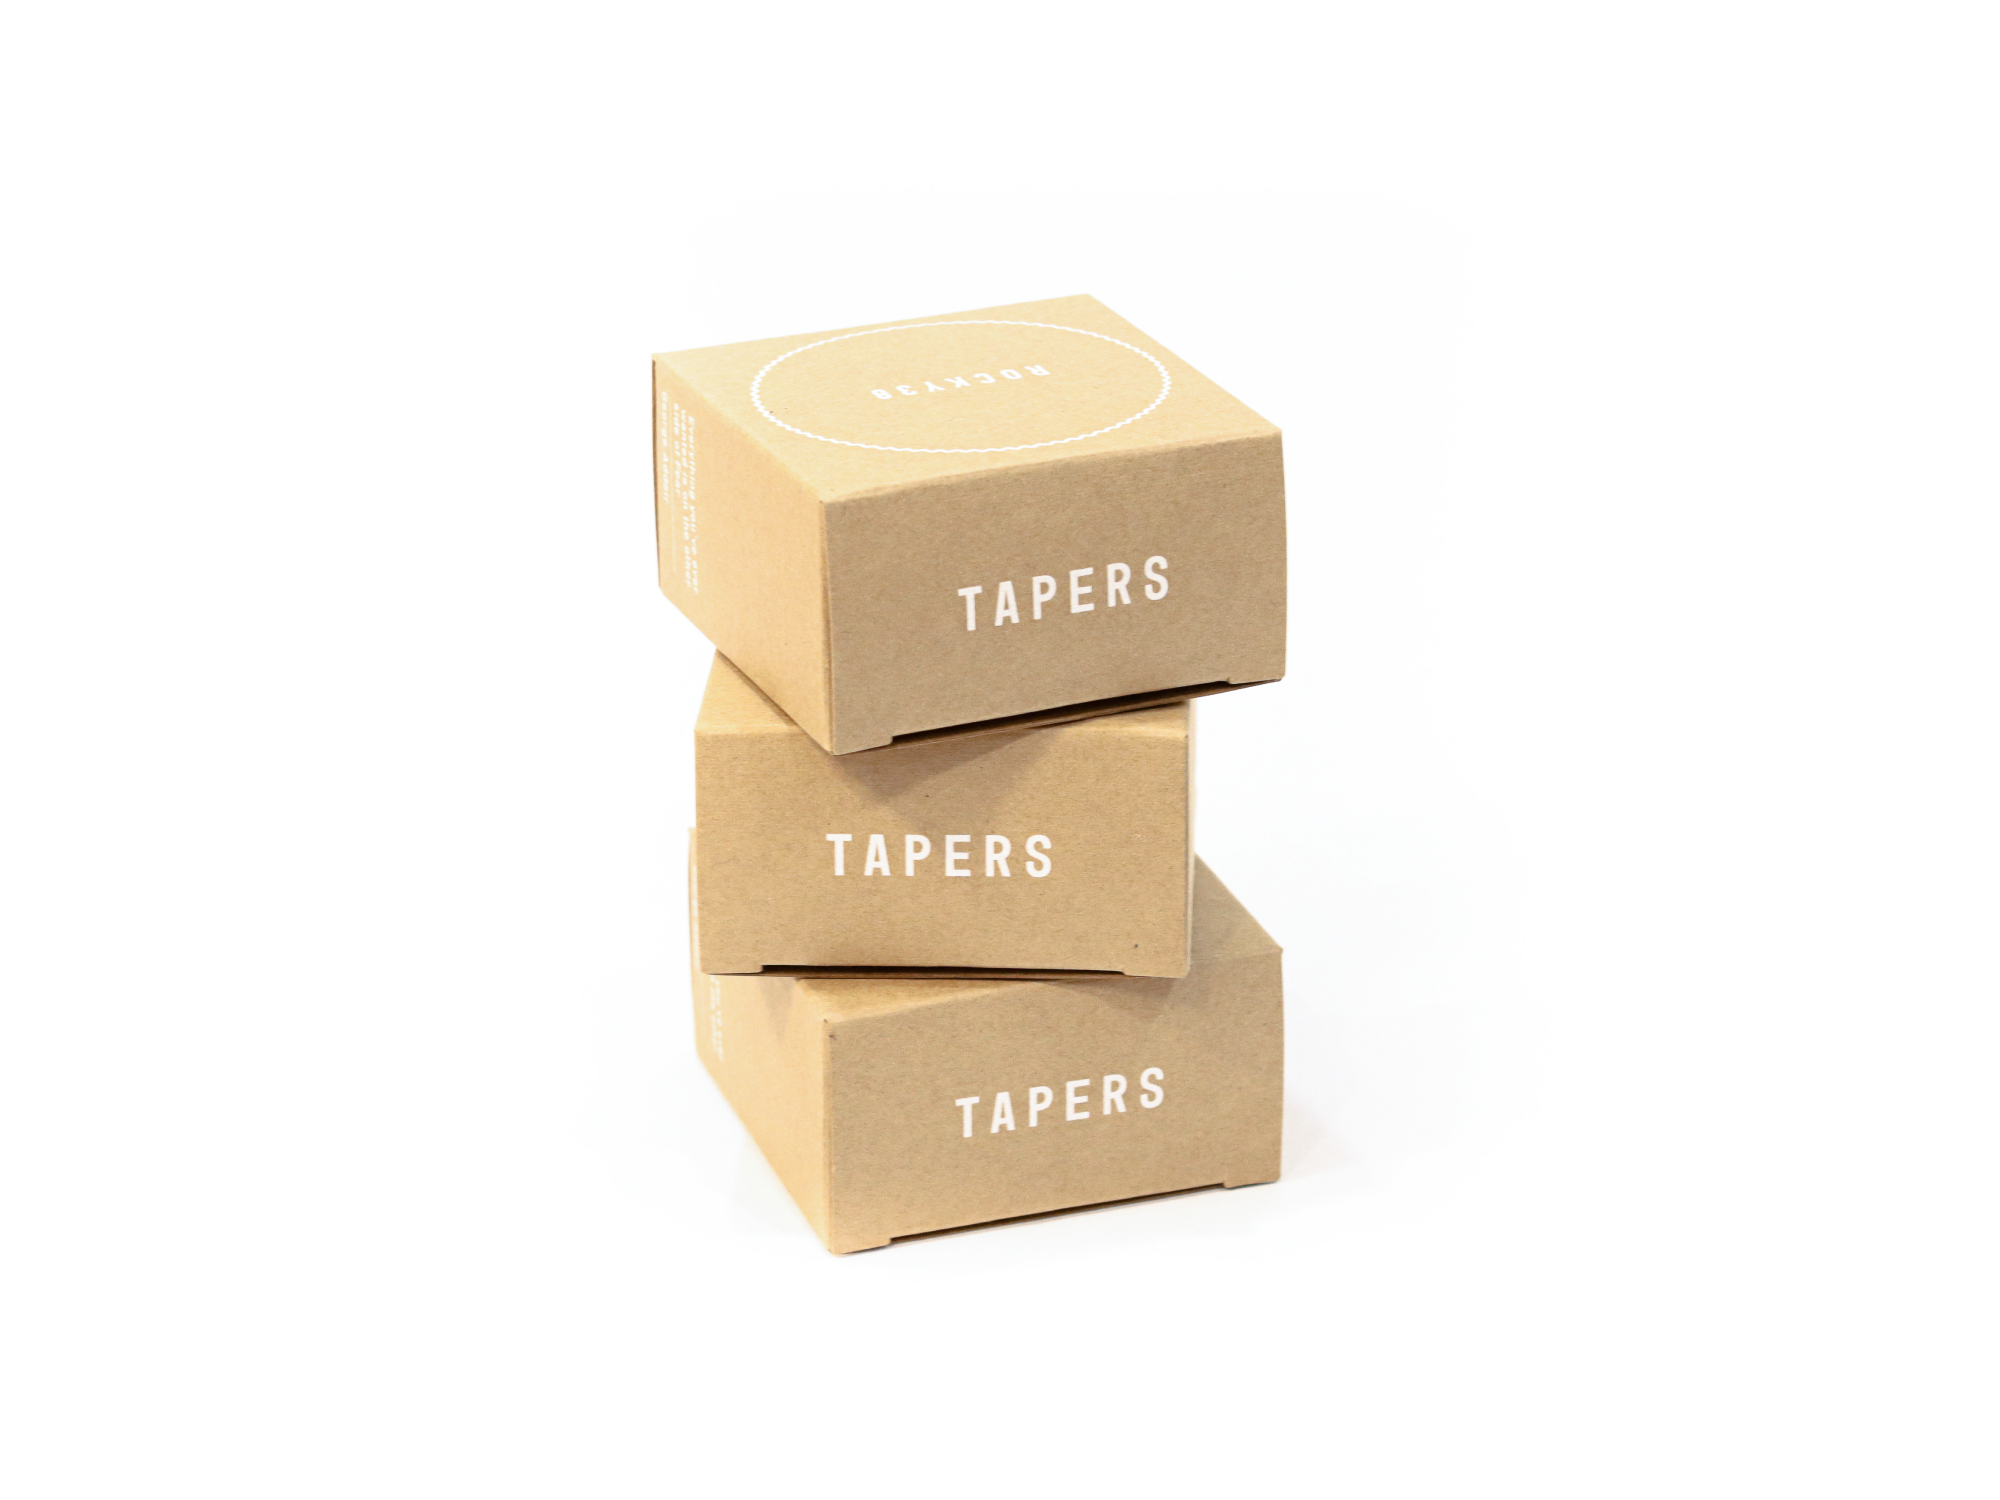 테이퍼스 패키지 디자인 B형 박스